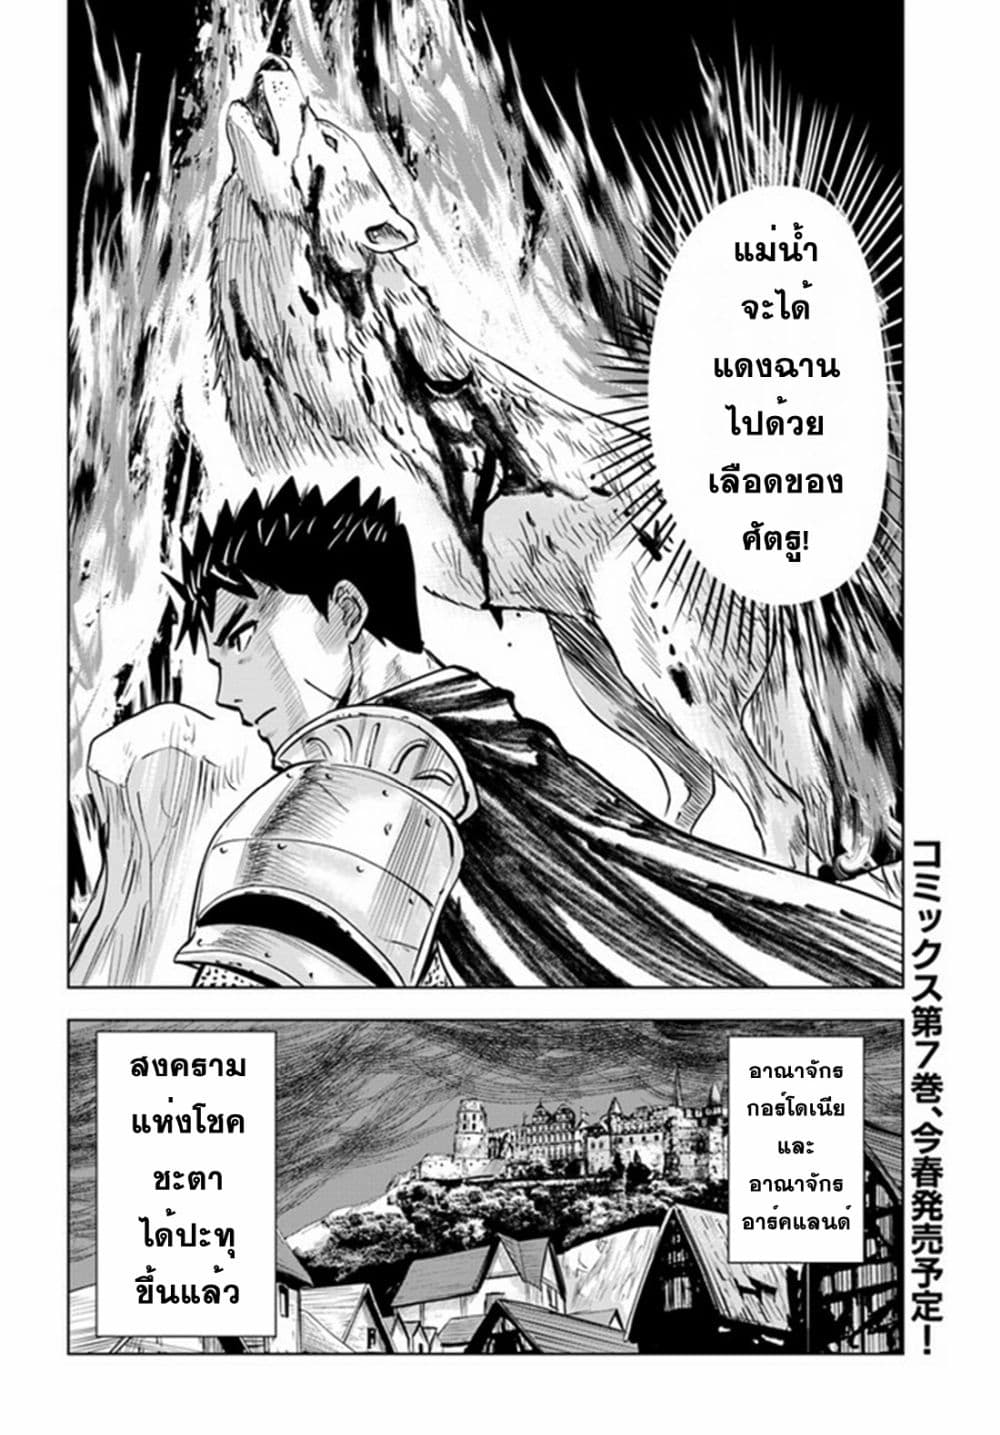 Oukoku e Tsuzuku Michi dorei Kenshi no Nariagari Eiyutan (Haaremu Raifu) - Road to the Kingdom Slave Swordsman the Rise of Heroes - Harem Life 40-40